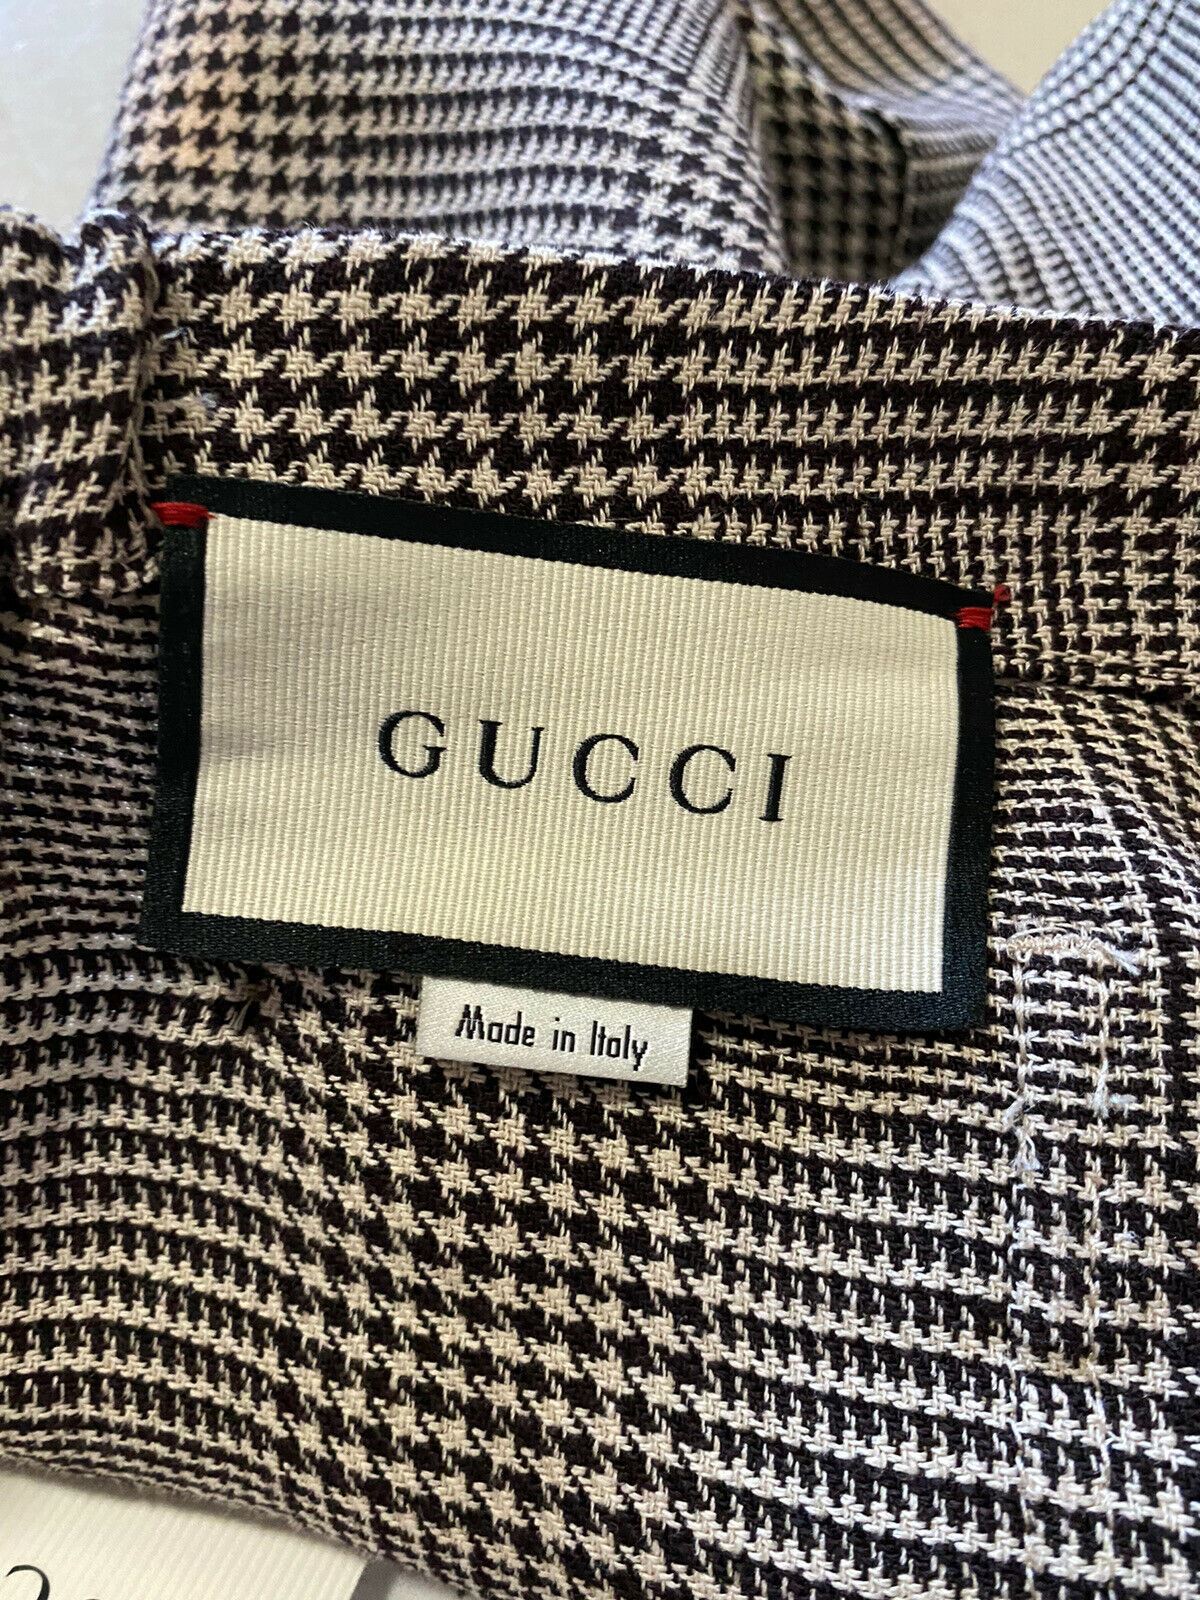 СЗТ $980 Мужские льняные короткие брюки Gucci цвета слоновой кости/черный, размер 34 США (50 ЕС) Италия